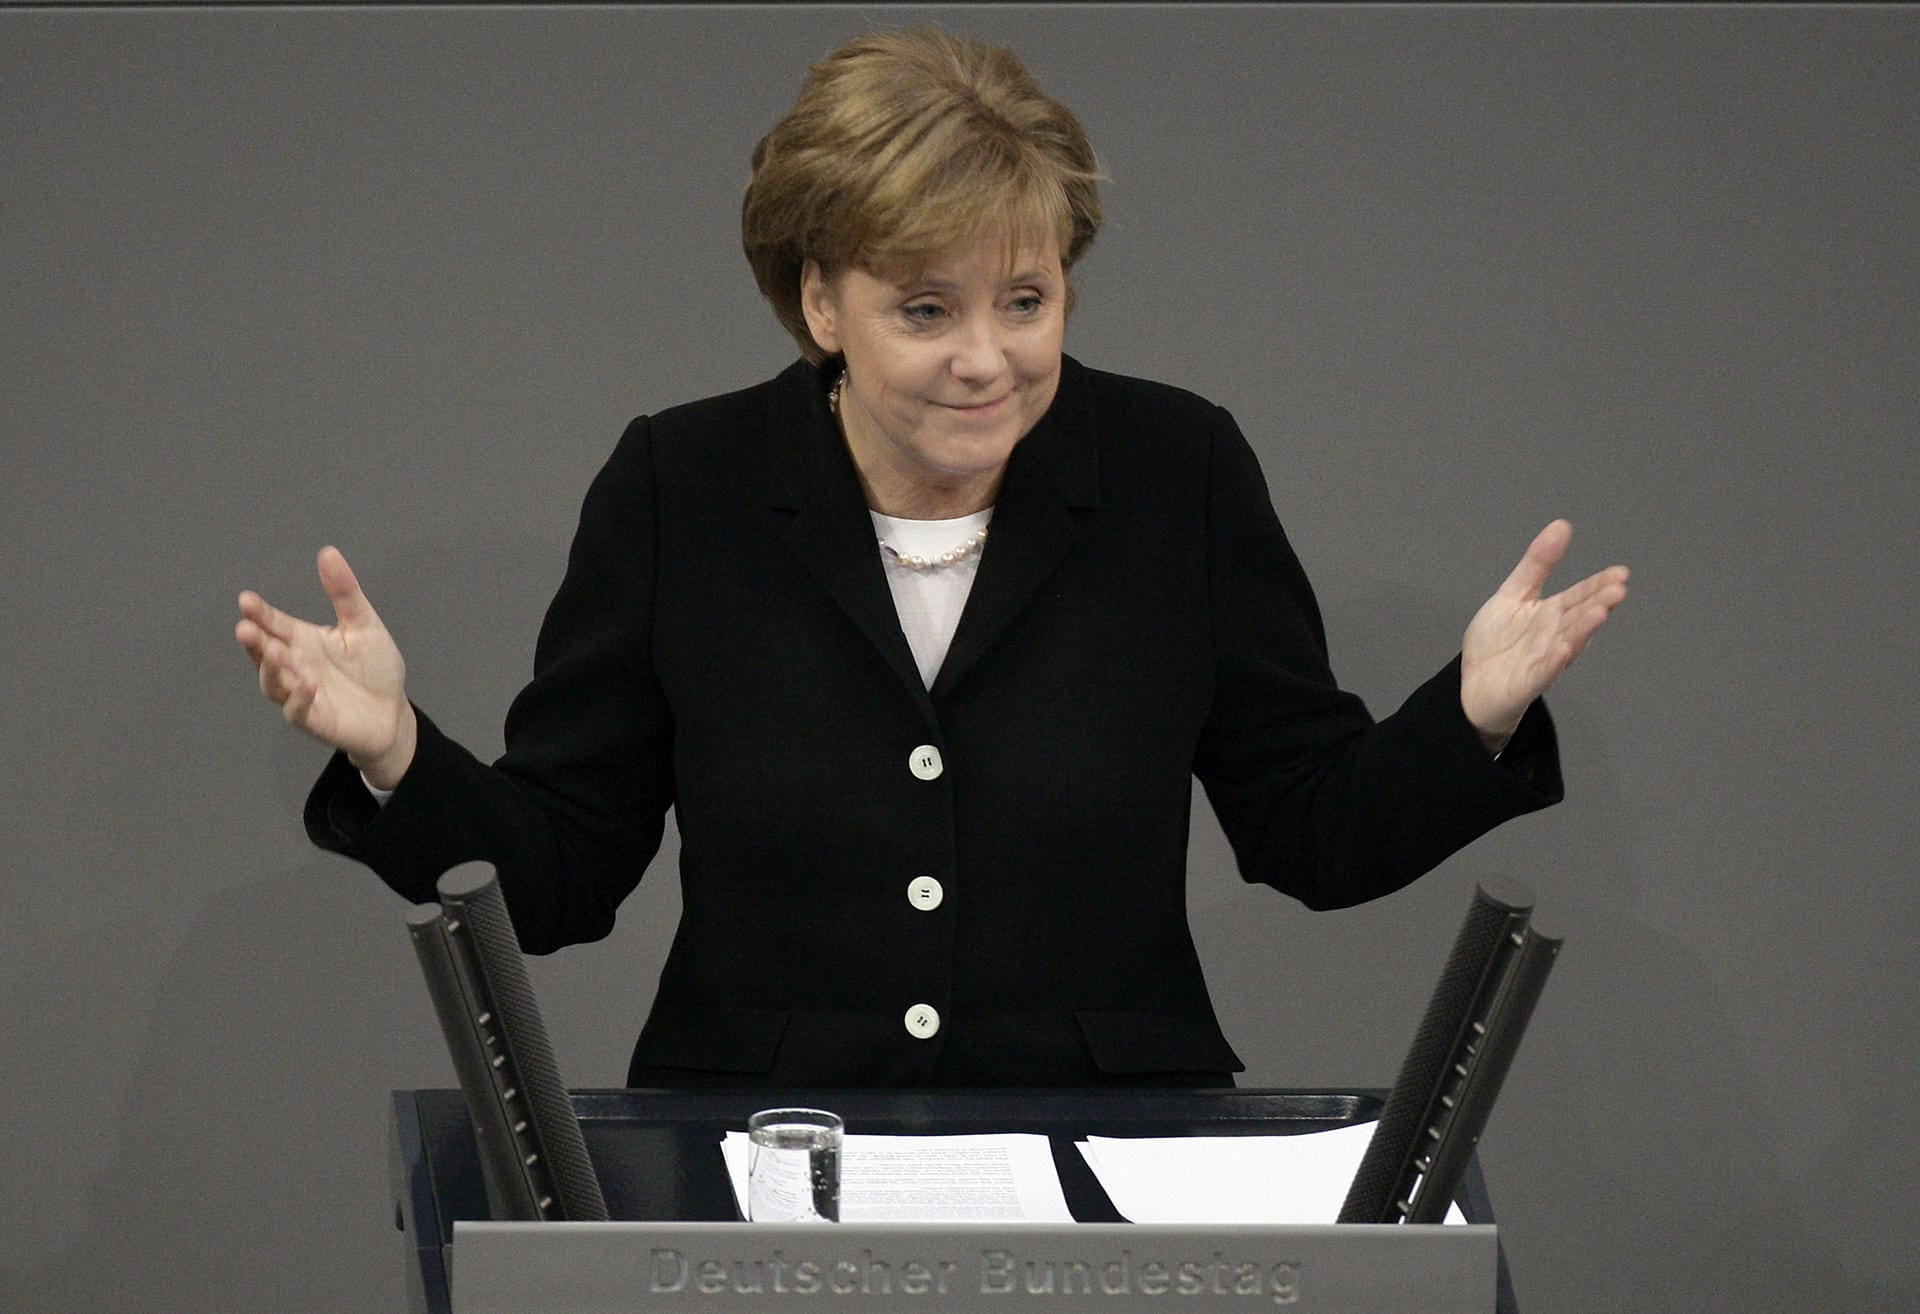 22. November 2005: Angekommen auf der Regierungsbank: Die CDU-Chefin wird im Parlament zur ersten deutschen Bundeskanzlerin gewählt und leitet eine Koalition von Union und SPD. Einem solchen Bündnis steht Merkel in insgesamt drei Legislaturperioden vor, zwischen 2009 und 2013 führt sie eine Regierung von Union und FDP.